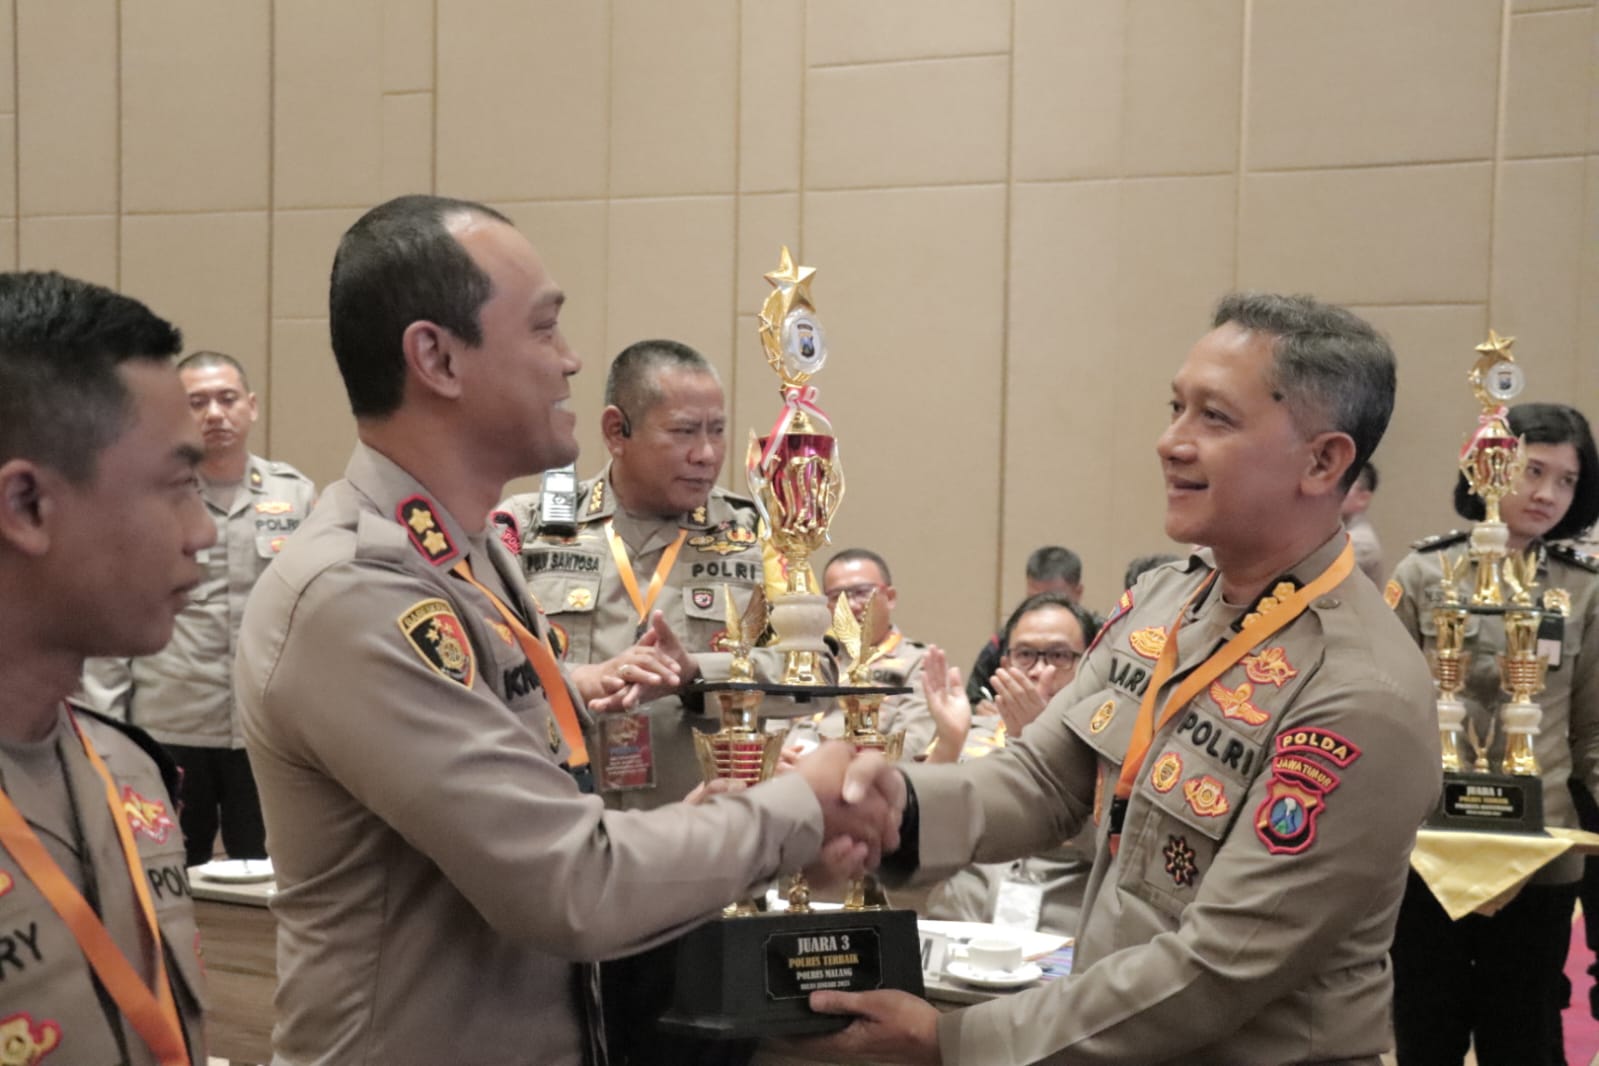 Kapolres Malang AKBP Putu Kholis Aryana saat menerima penghargaan dari Polda Jatim. (istimewa)